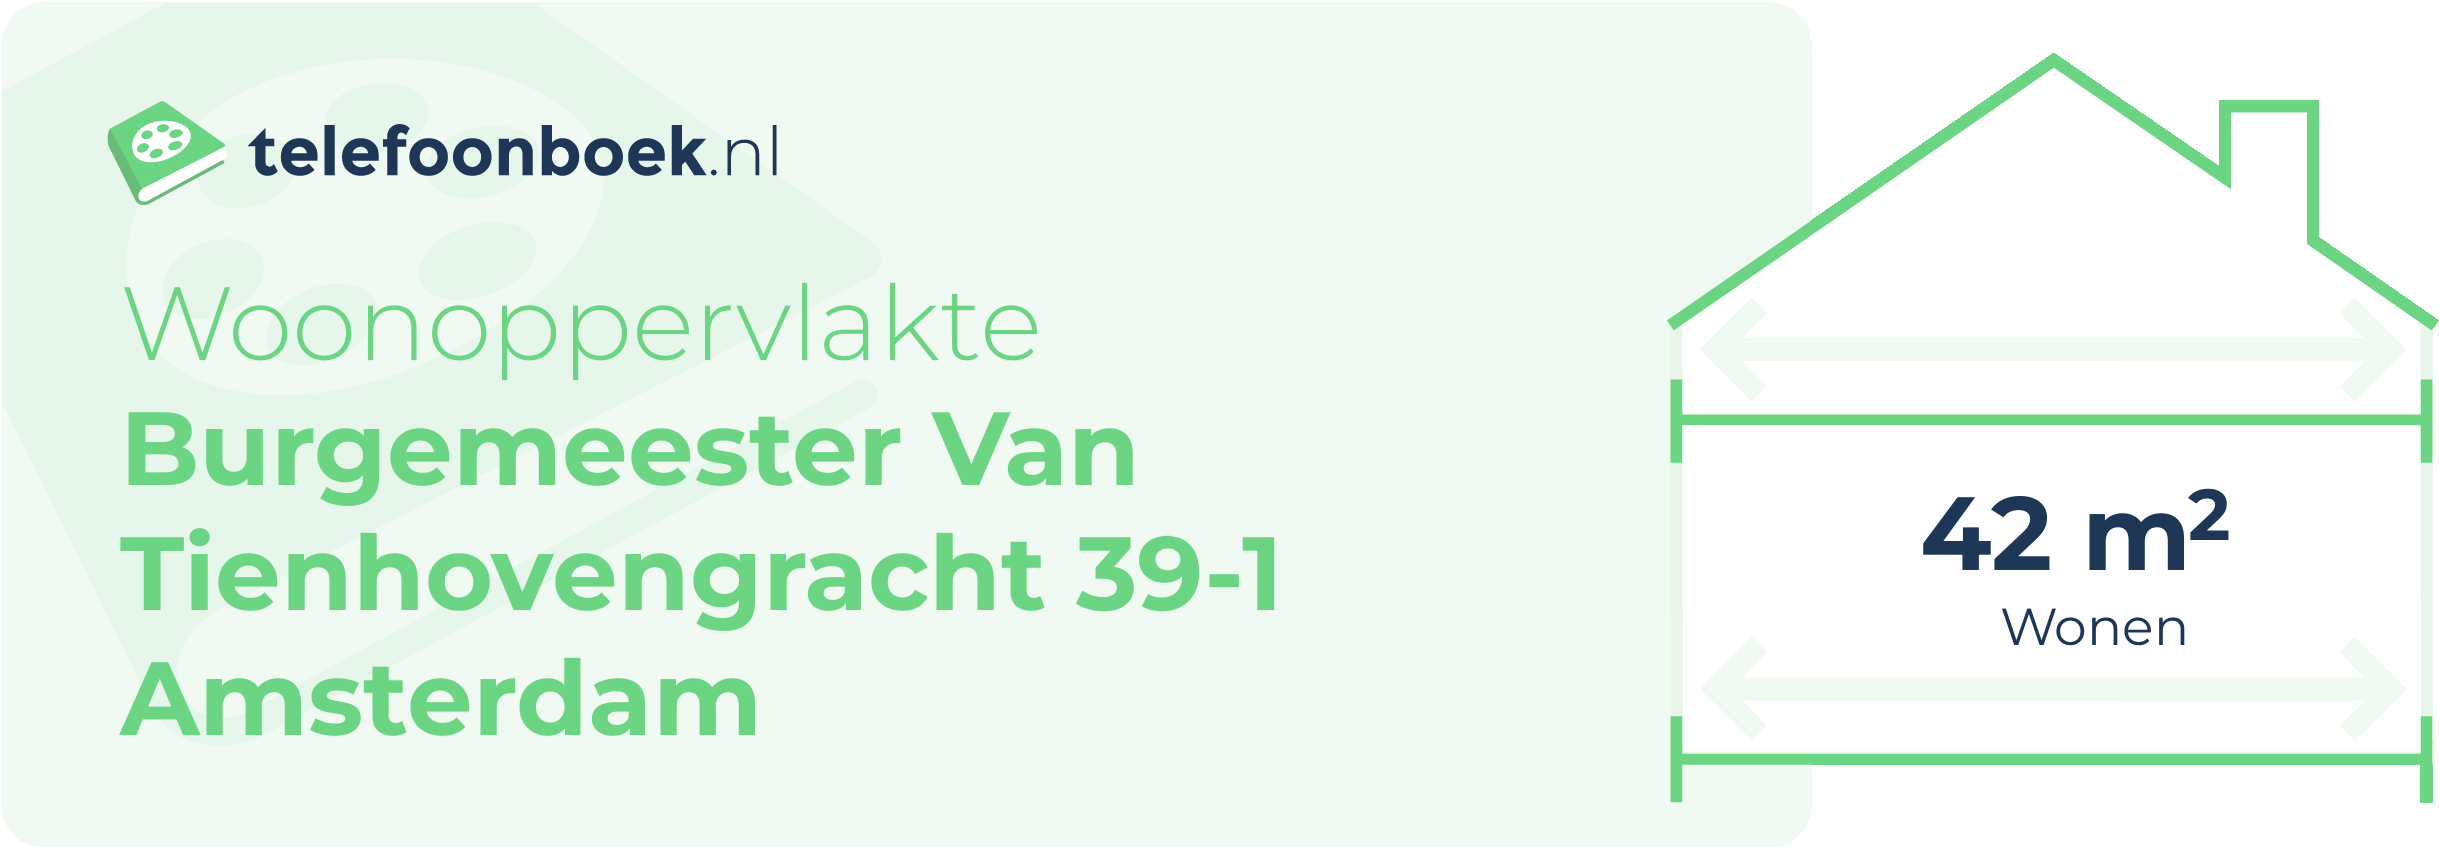 Woonoppervlakte Burgemeester Van Tienhovengracht 39-1 Amsterdam